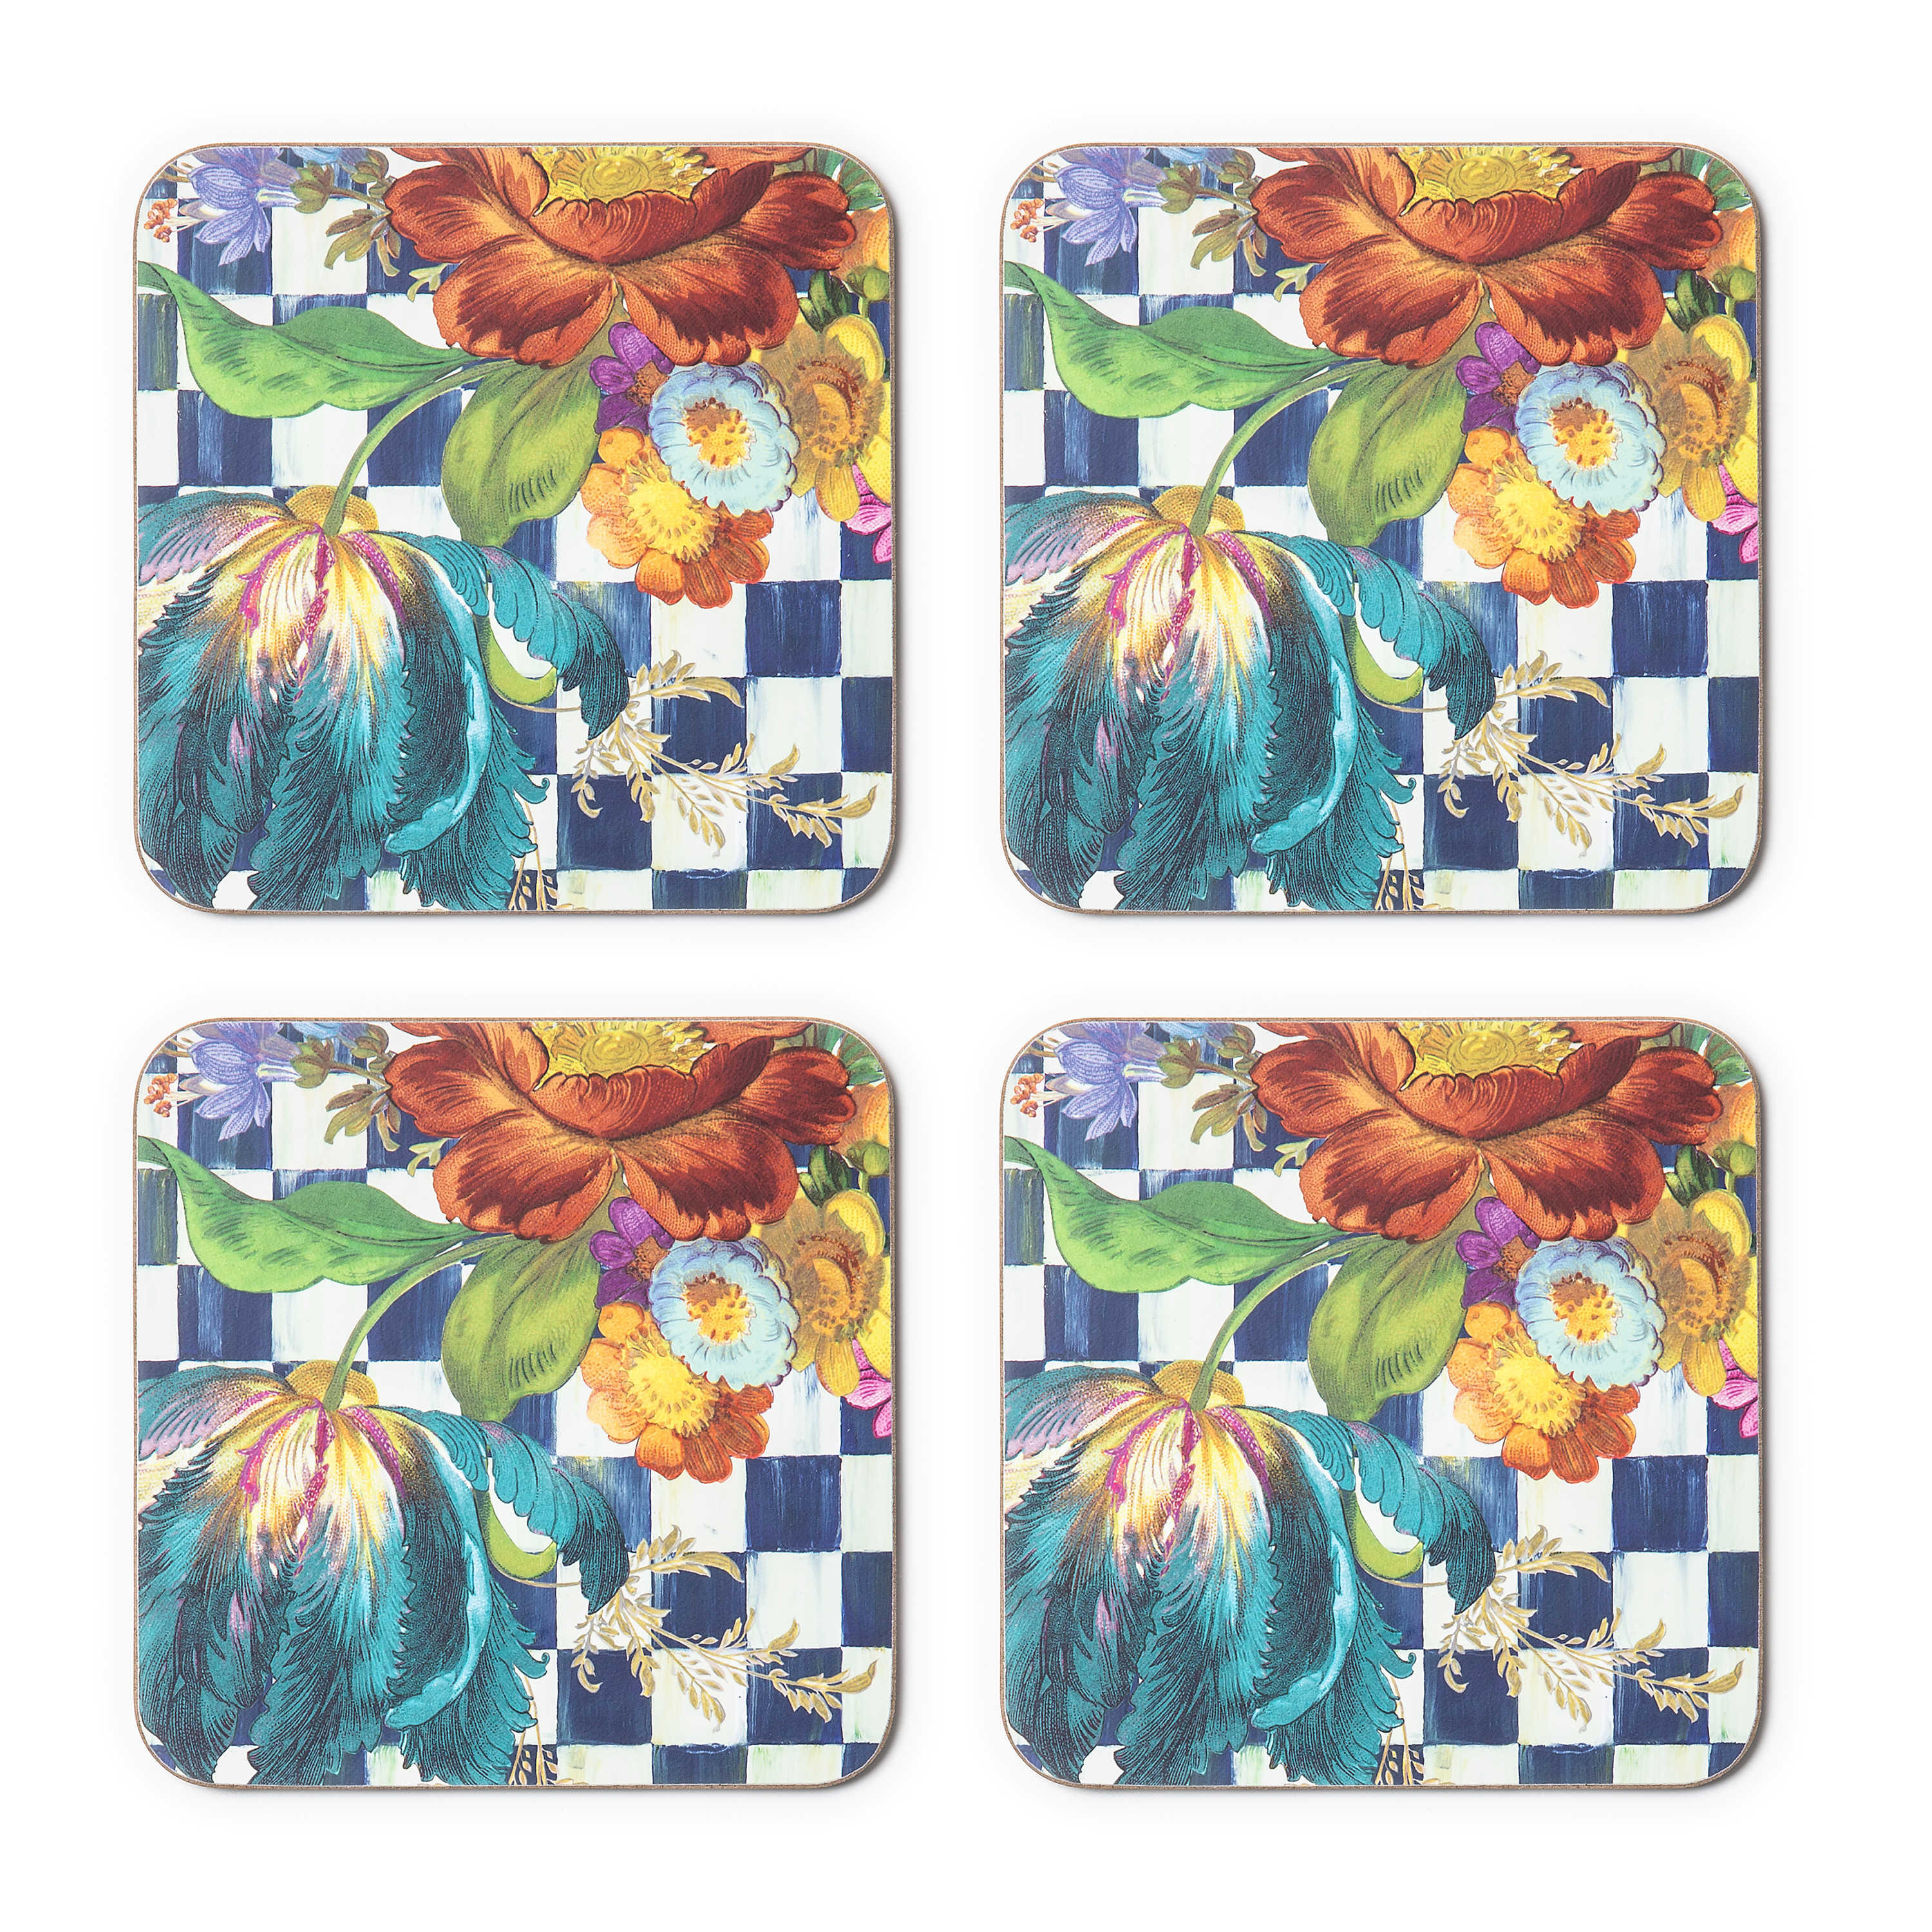 Royal Flower Market Cork Back Coasters - Set of 4 mackenzie-childs Panama 0